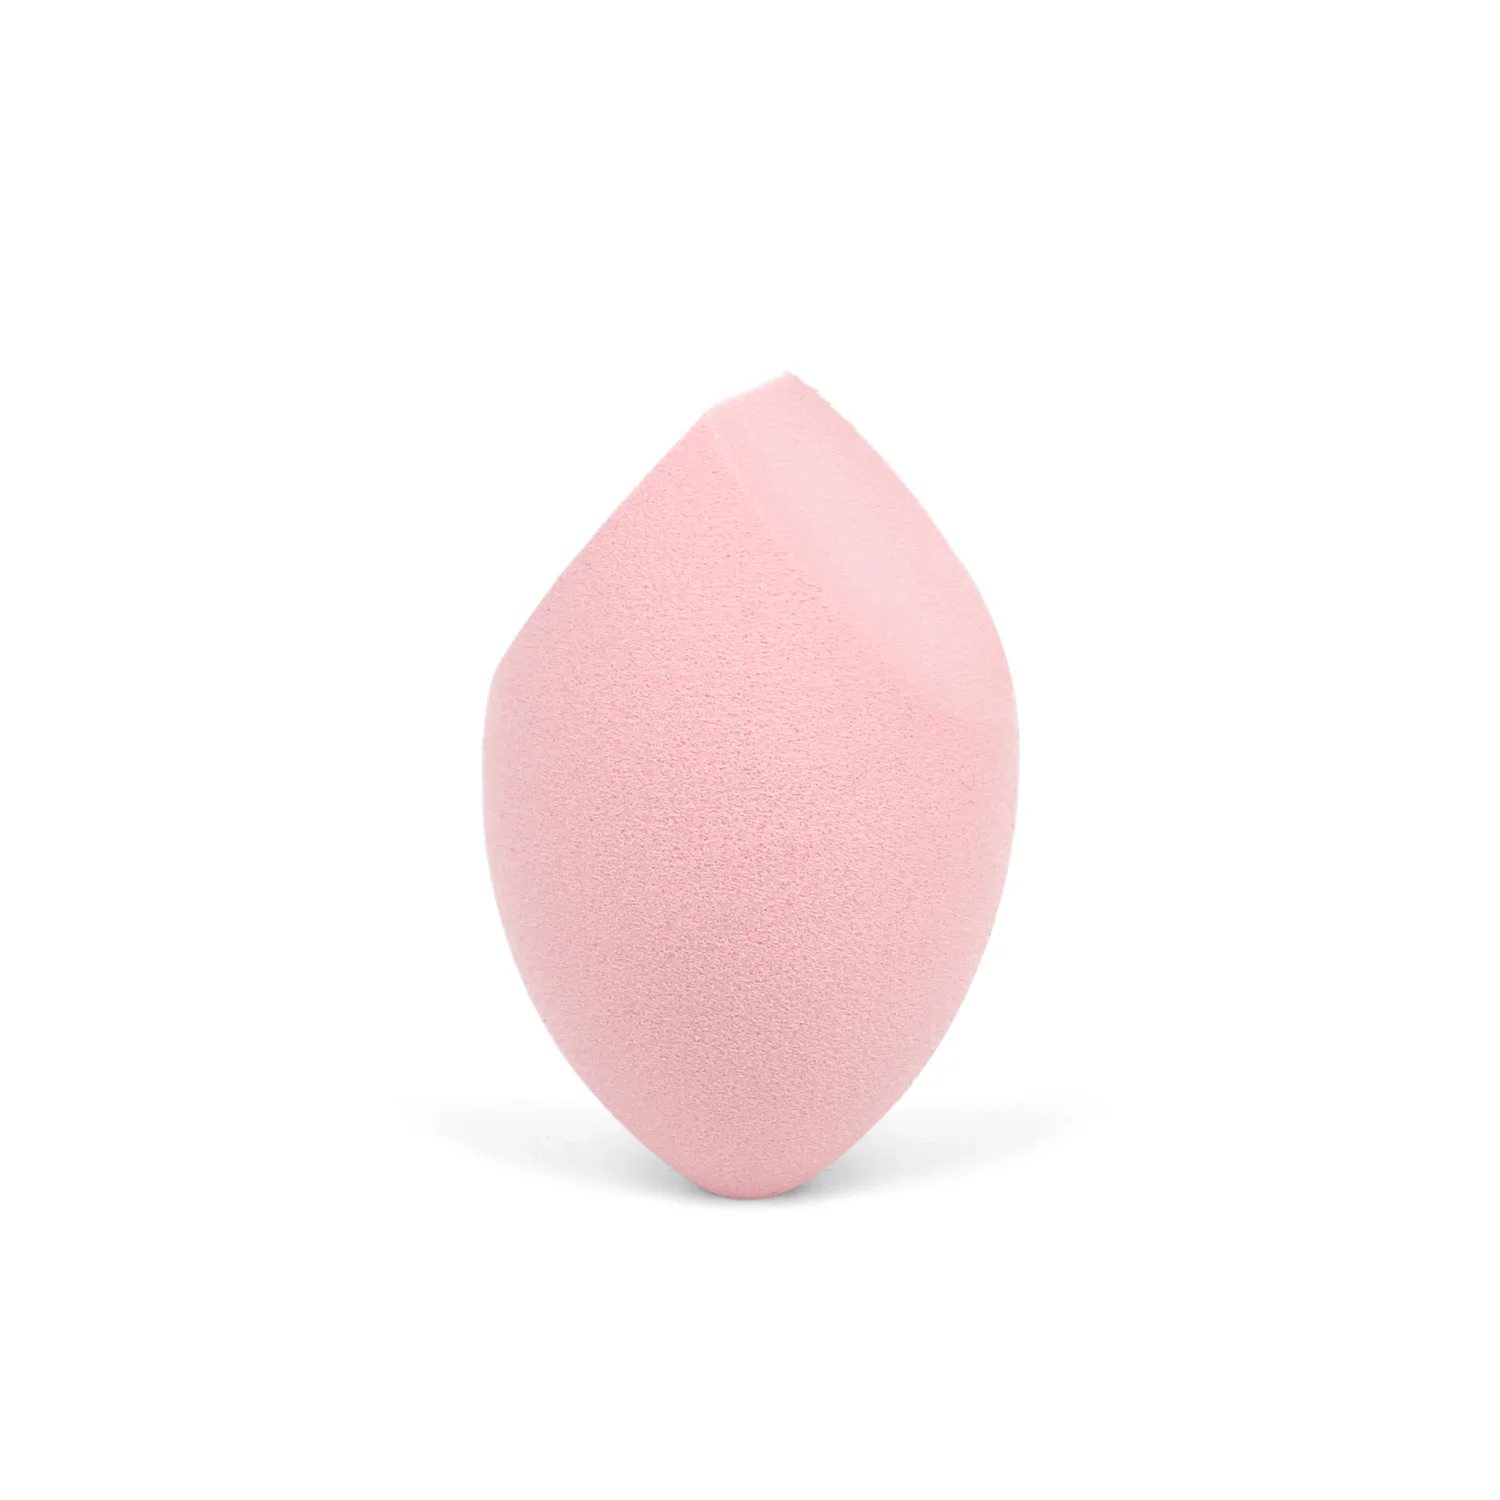 В форме сердца макияж яйцо пудра слойка влажный и сухой спонж коробка профессиональная Жидкая Основа макияжа Румяна консилер косметические инструменты - Цвет: pink